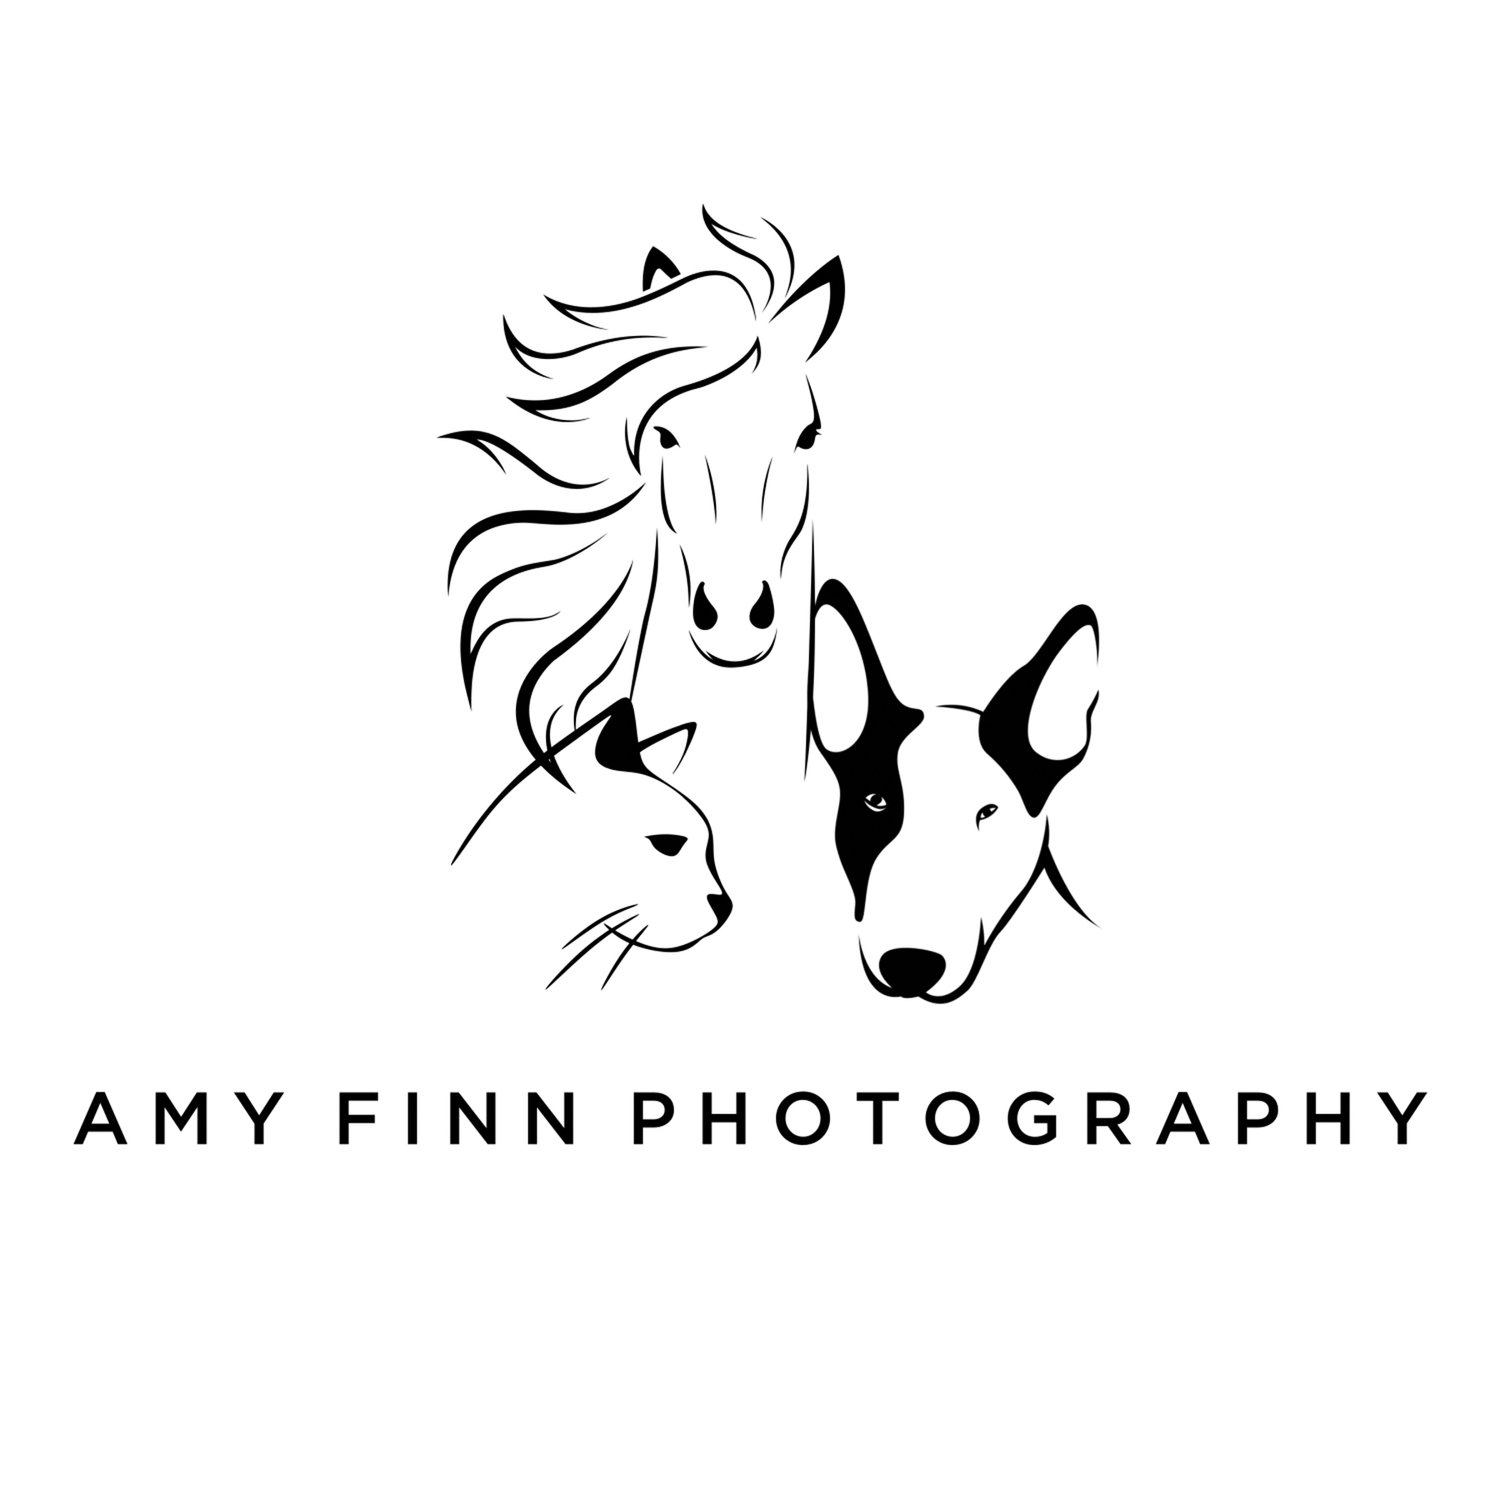 Amy Finn Photography